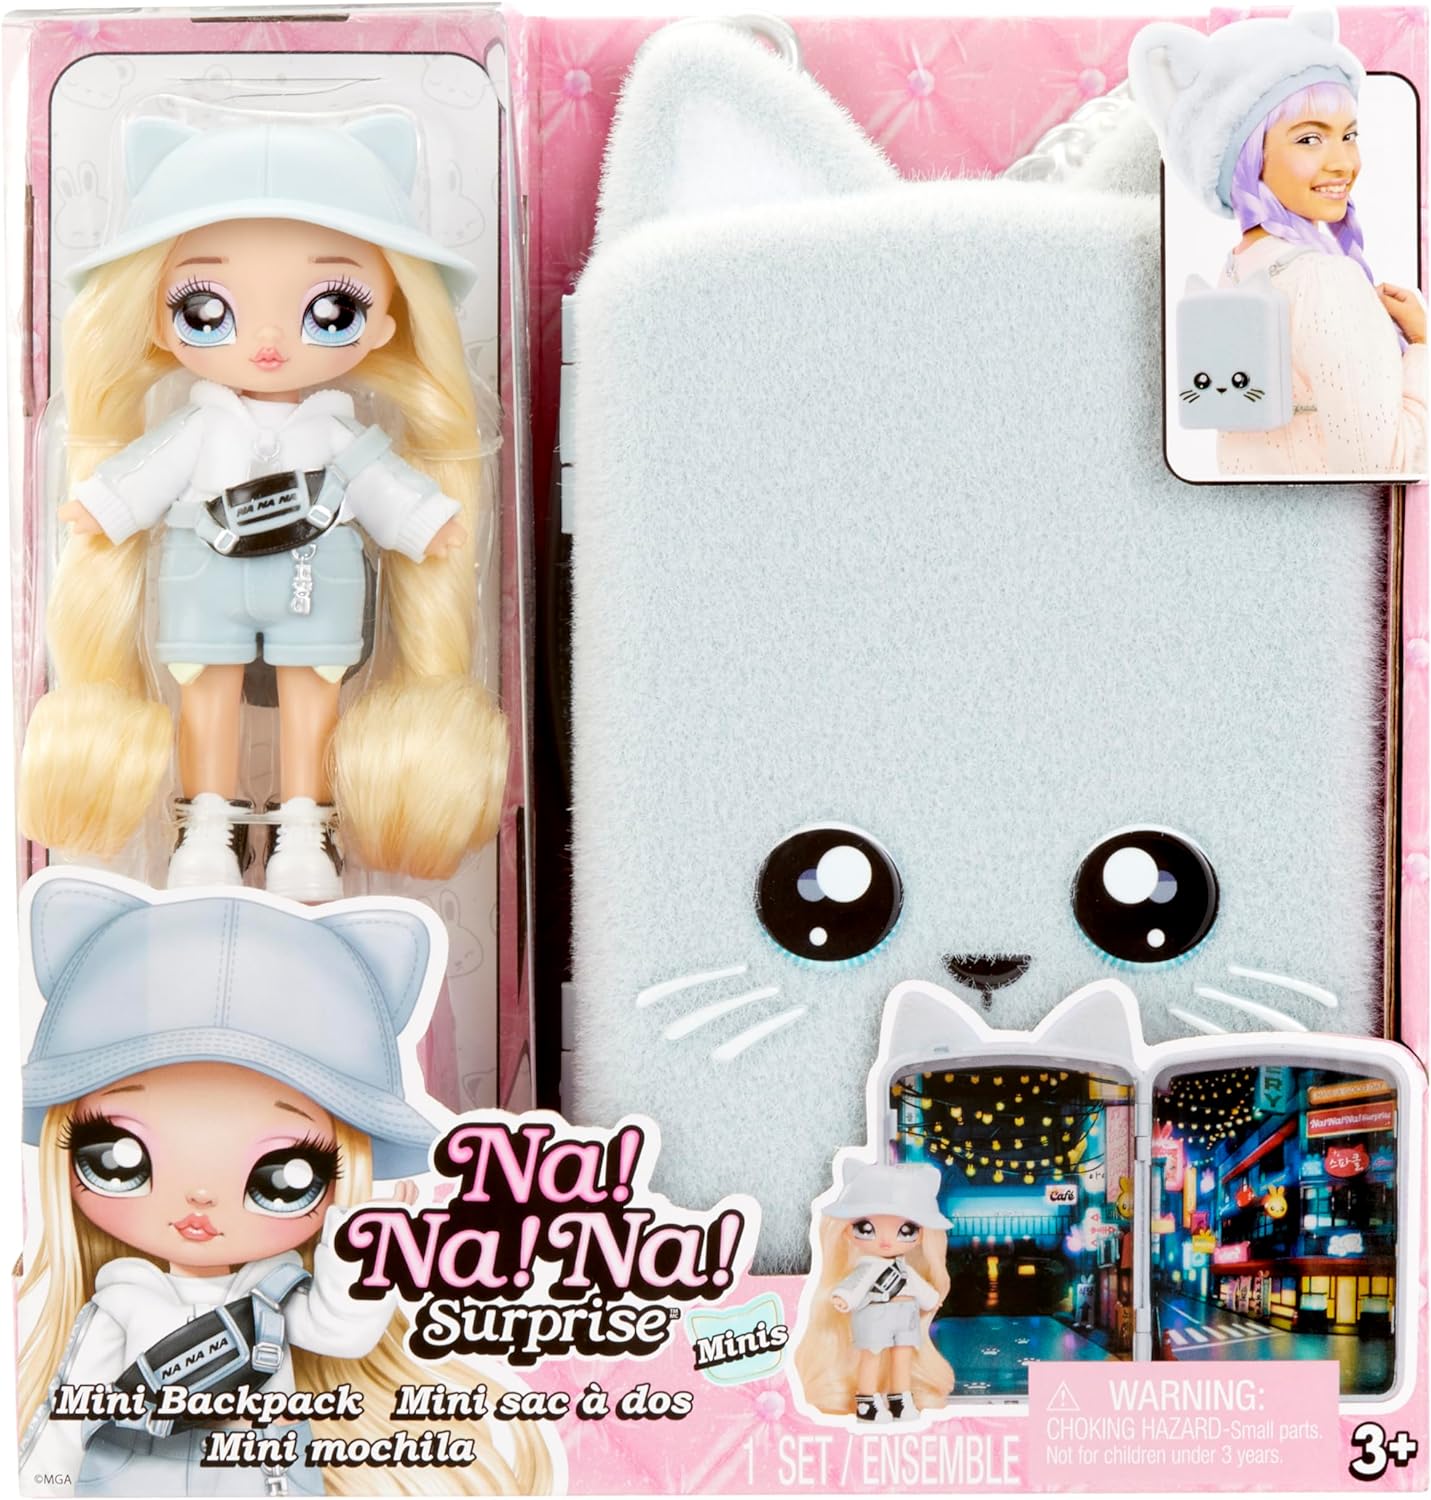 Na! Na! Na! Surprise Mini Backpack Series 2 Khloe Kitty Fashion Doll, Fuzzy White Kitty Backpack, Gift for Kids